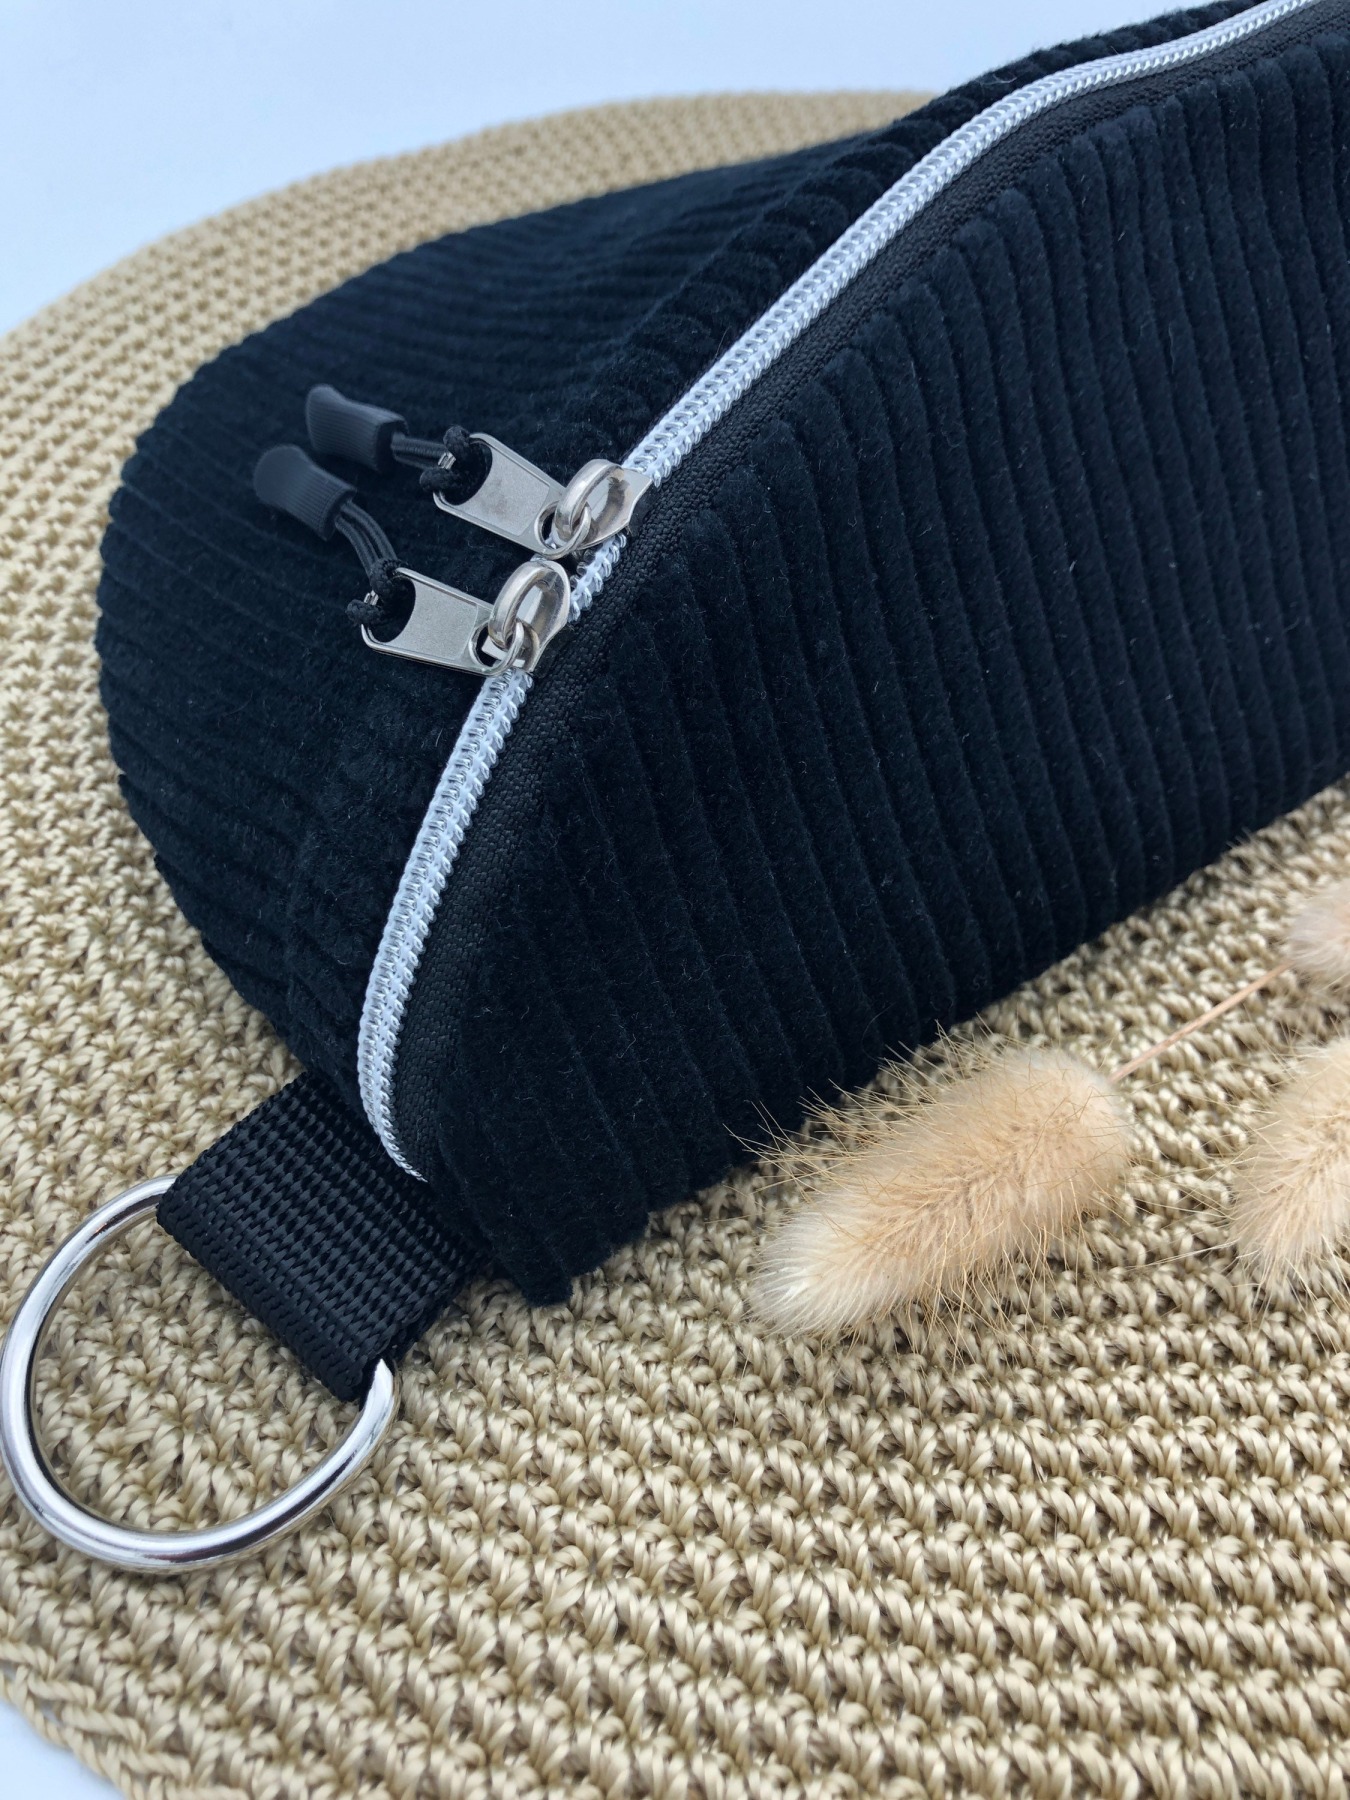 Bauchtasche XL, Crossbag, Cord schwarz mit Taschengurt Fischgrät, Hipbag, leicht und praktisch,